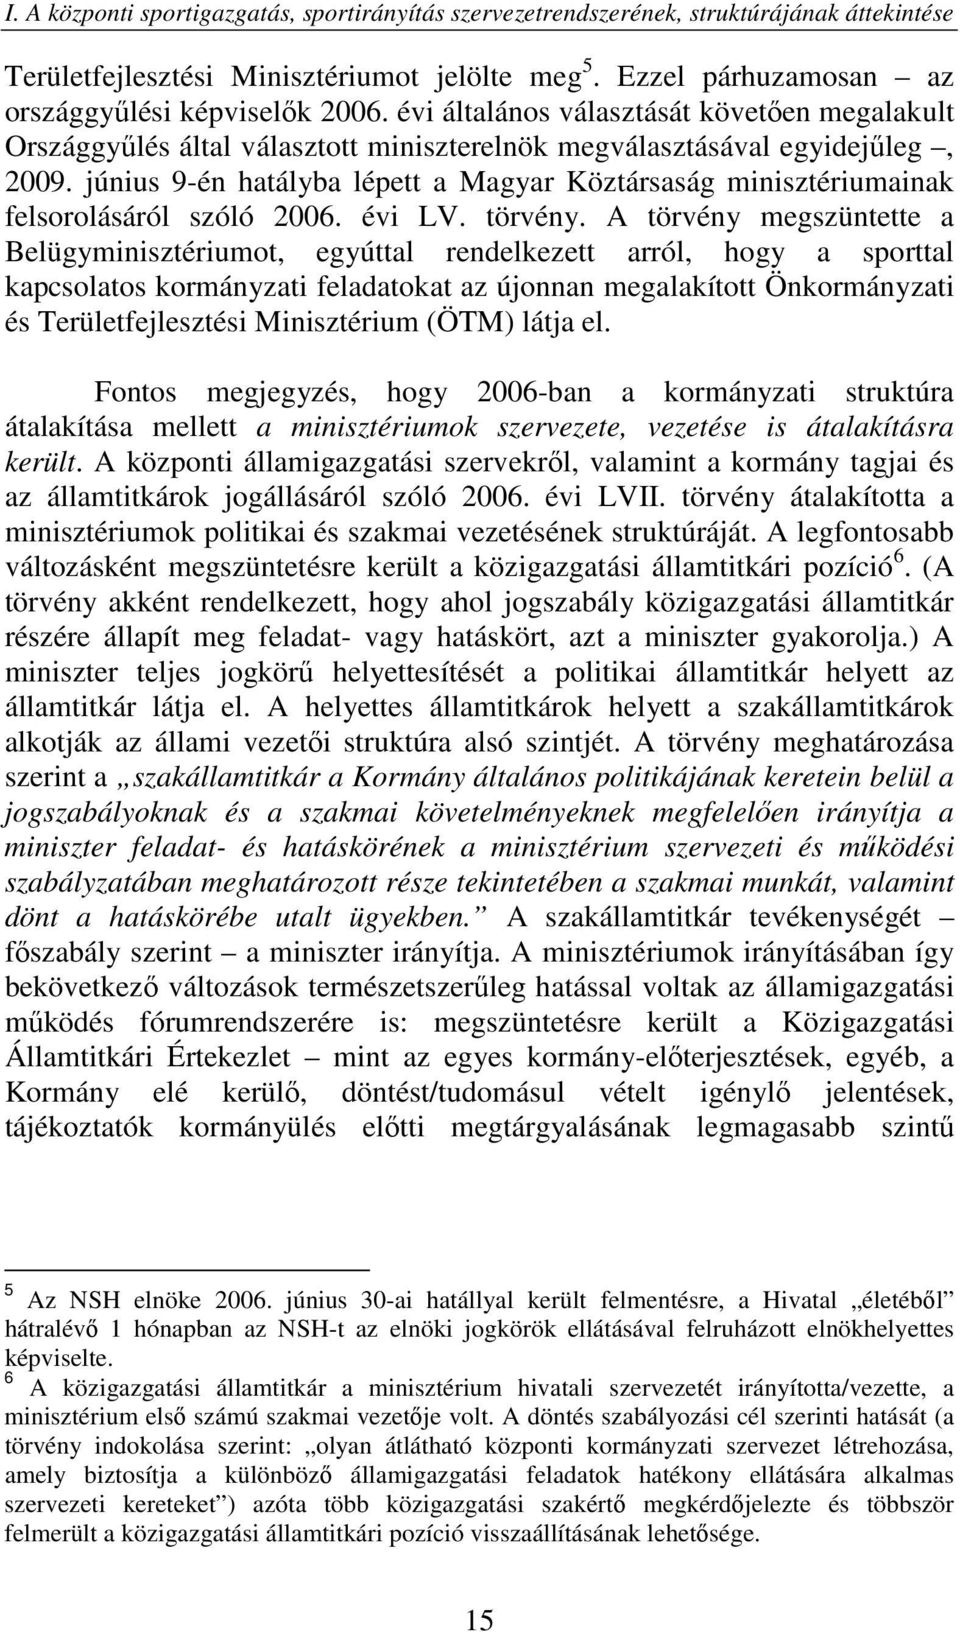 június 9-én hatályba lépett a Magyar Köztársaság minisztériumainak felsorolásáról szóló 2006. évi LV. törvény.